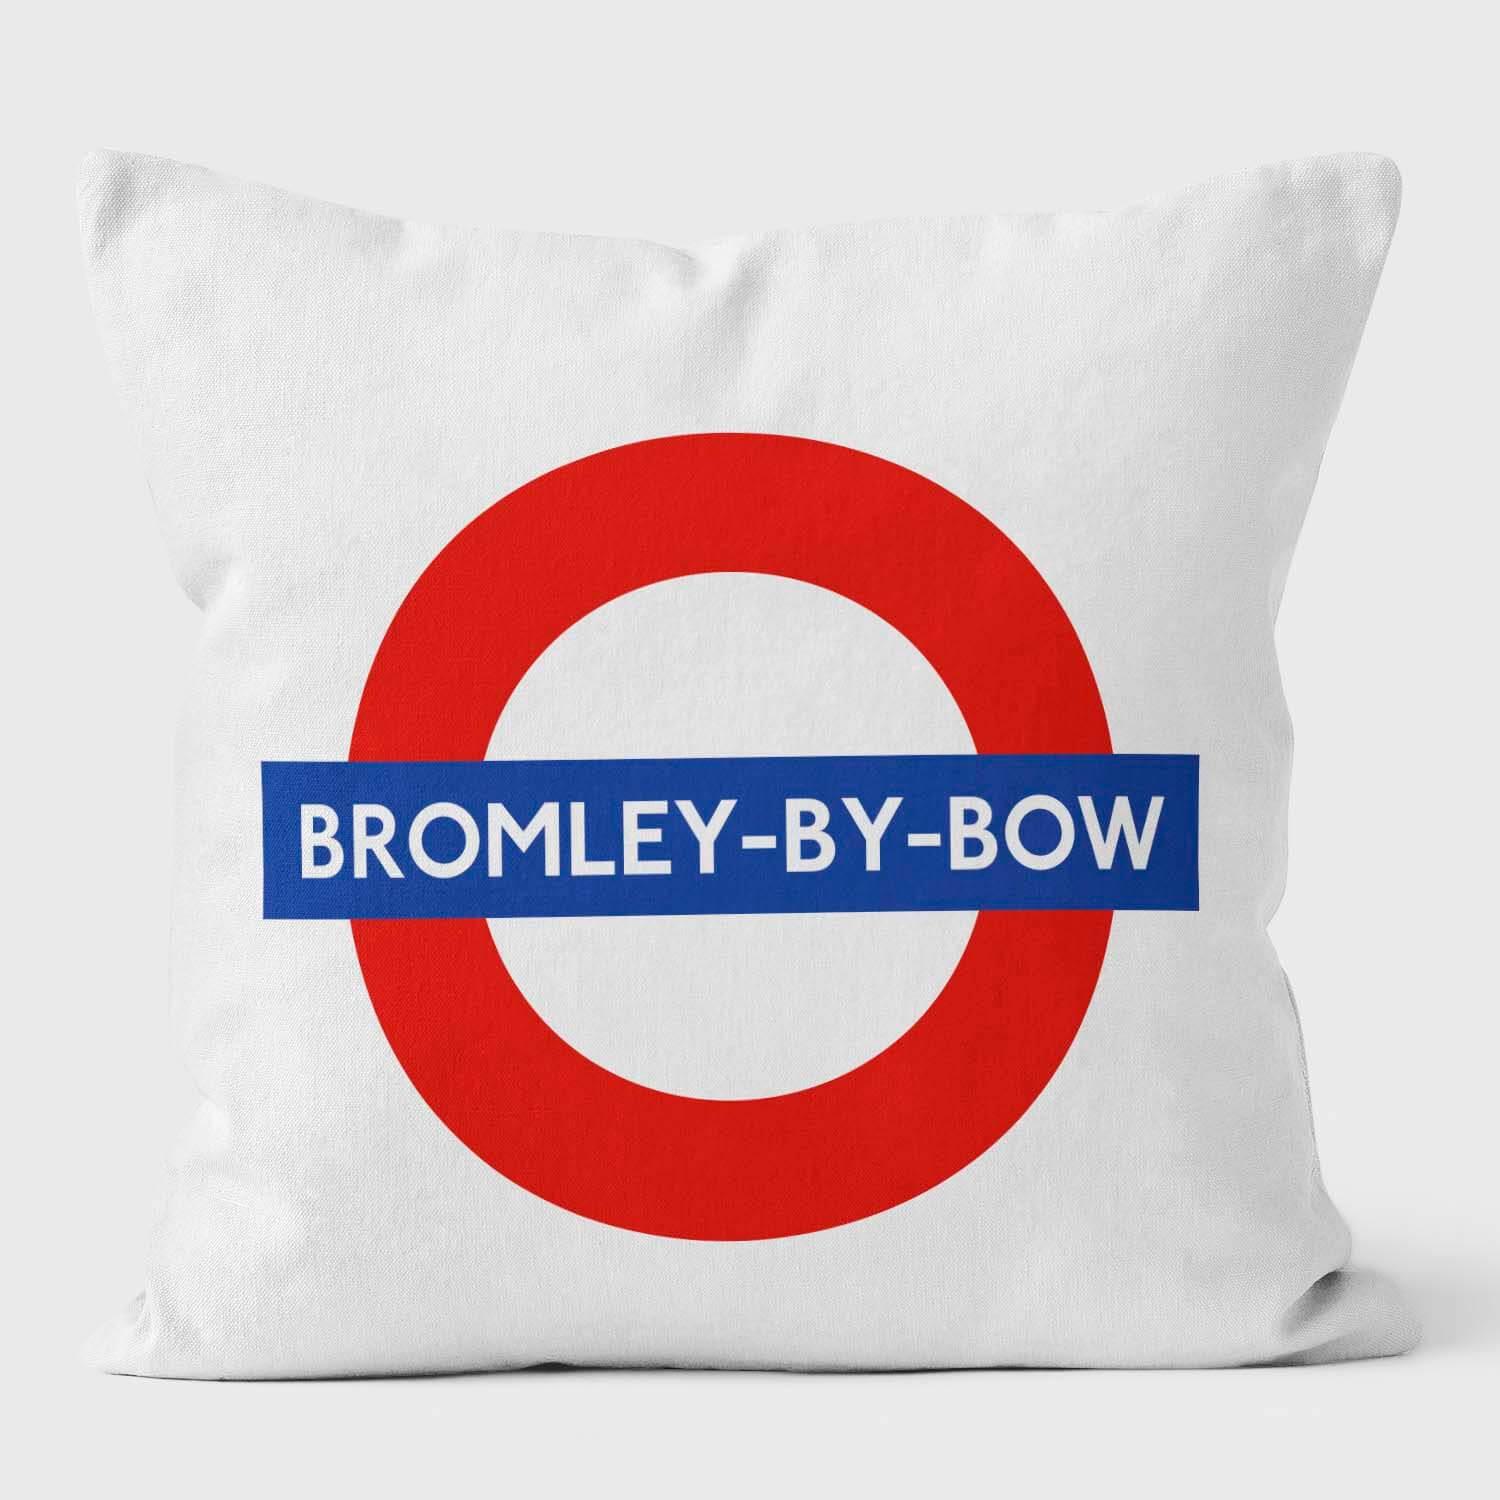 Bromley By Bow London Underground Tube Station Roundel Cushion - Handmade Cushions UK - WeLoveCushions